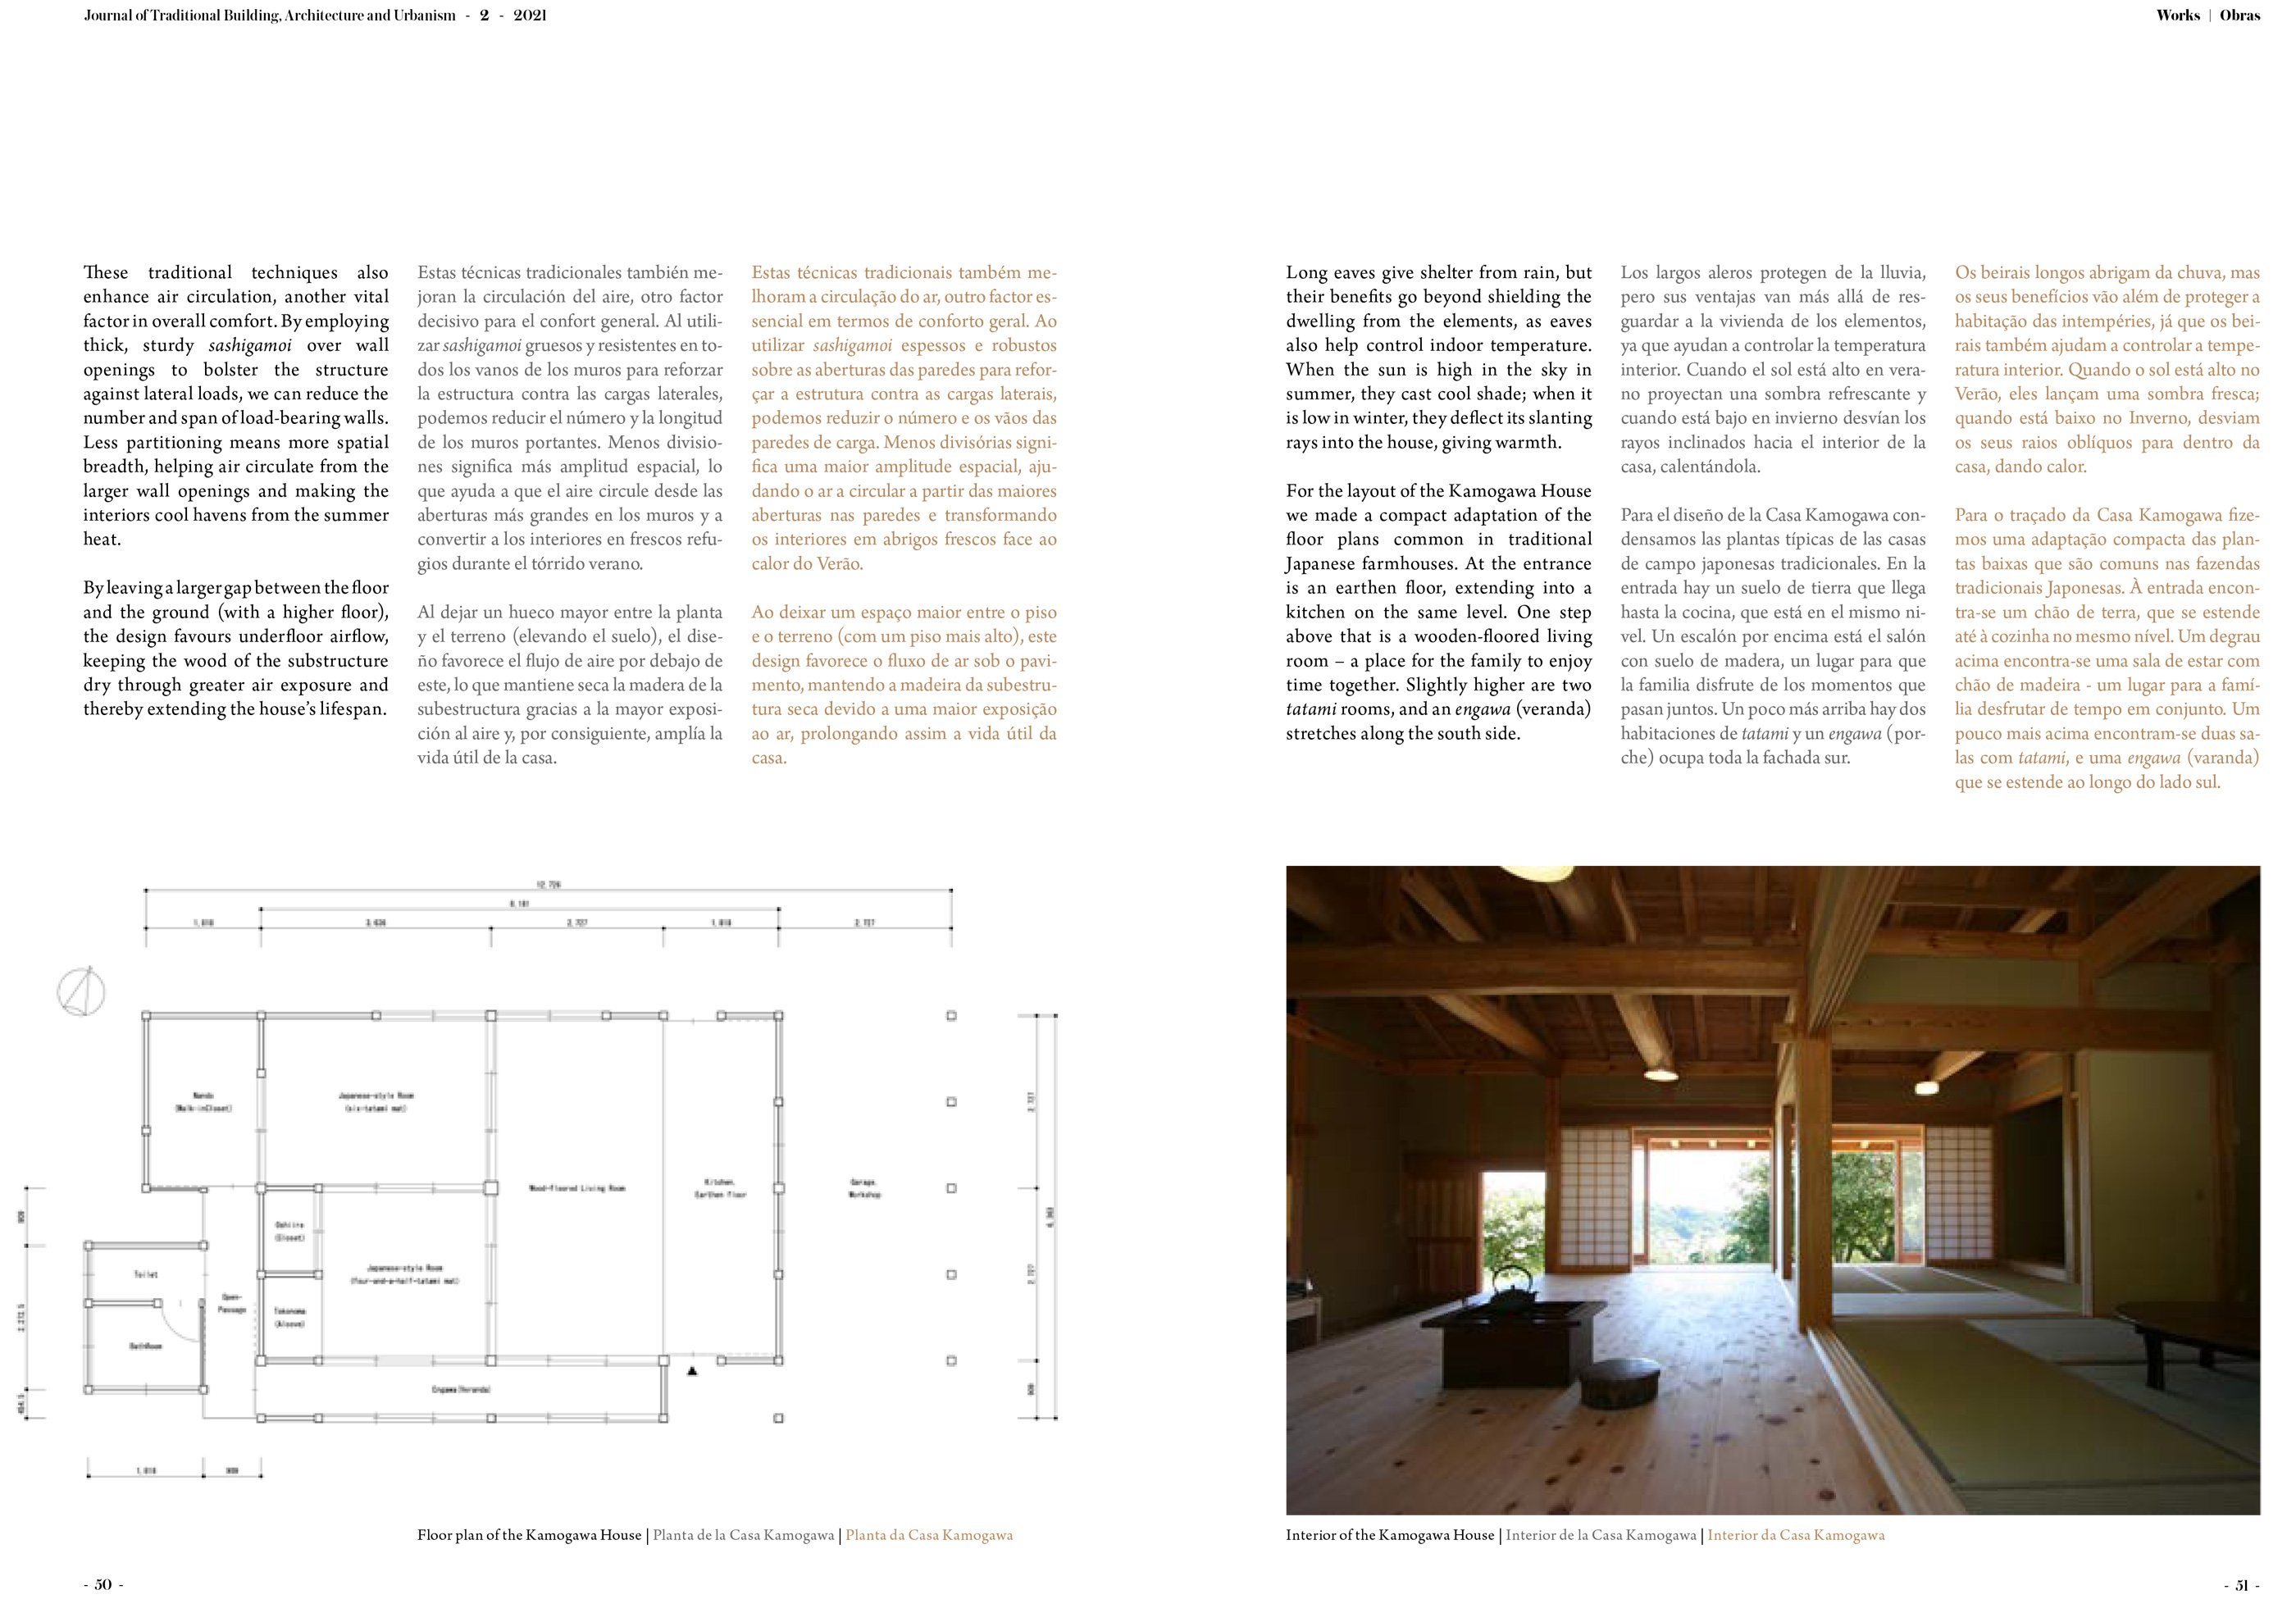 惺々舎論文 Journal of Traditional Building, Architecture and Urbanism